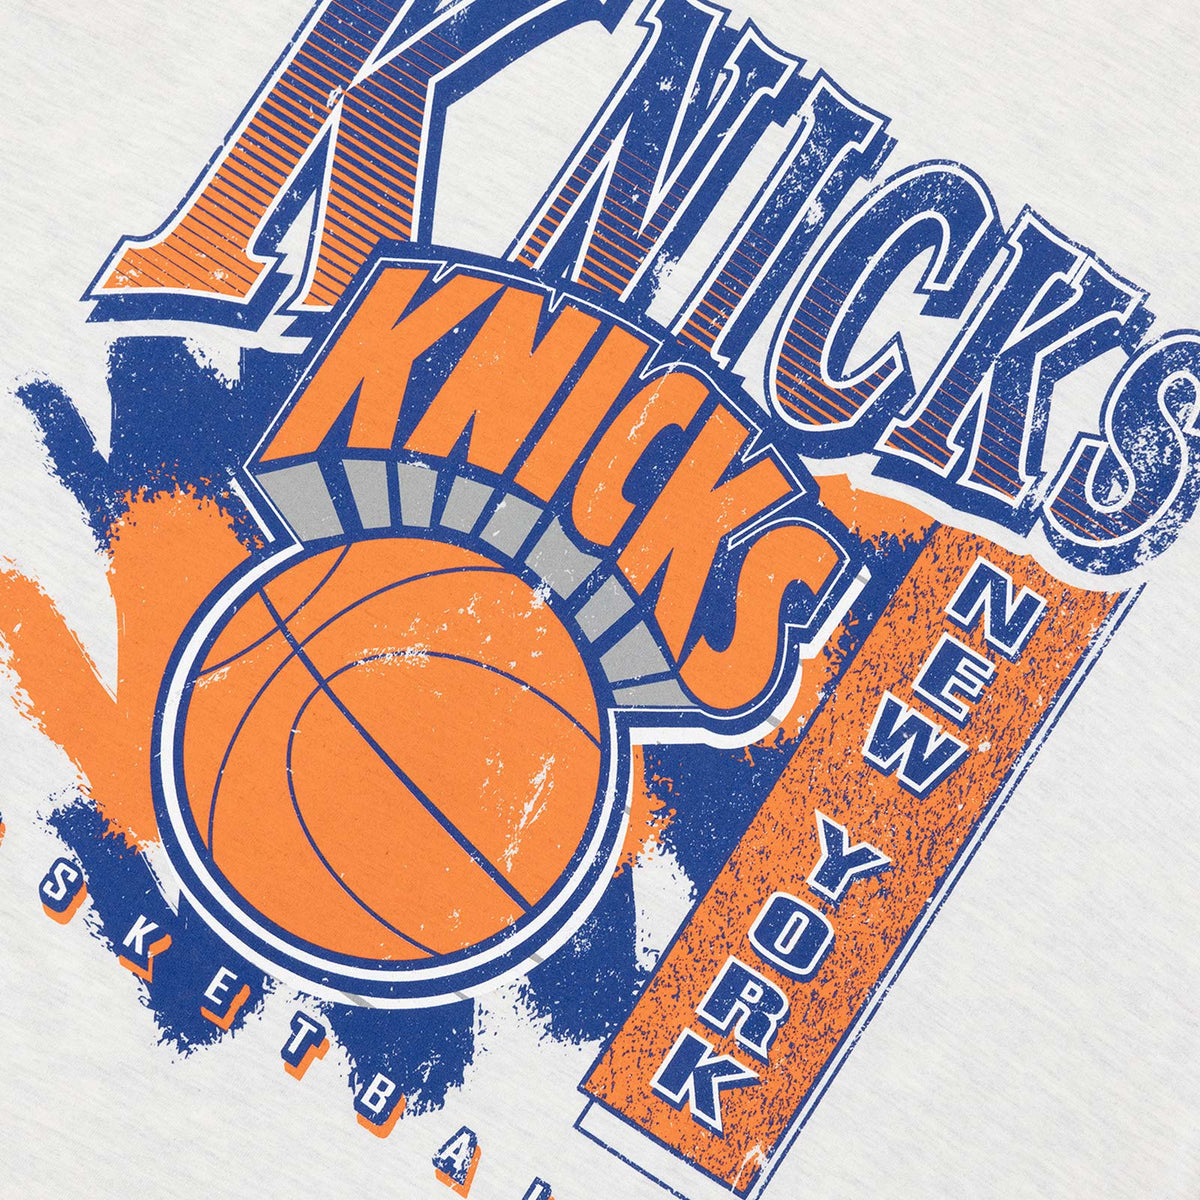 New York Knicks Brush Off Tee - White Marl